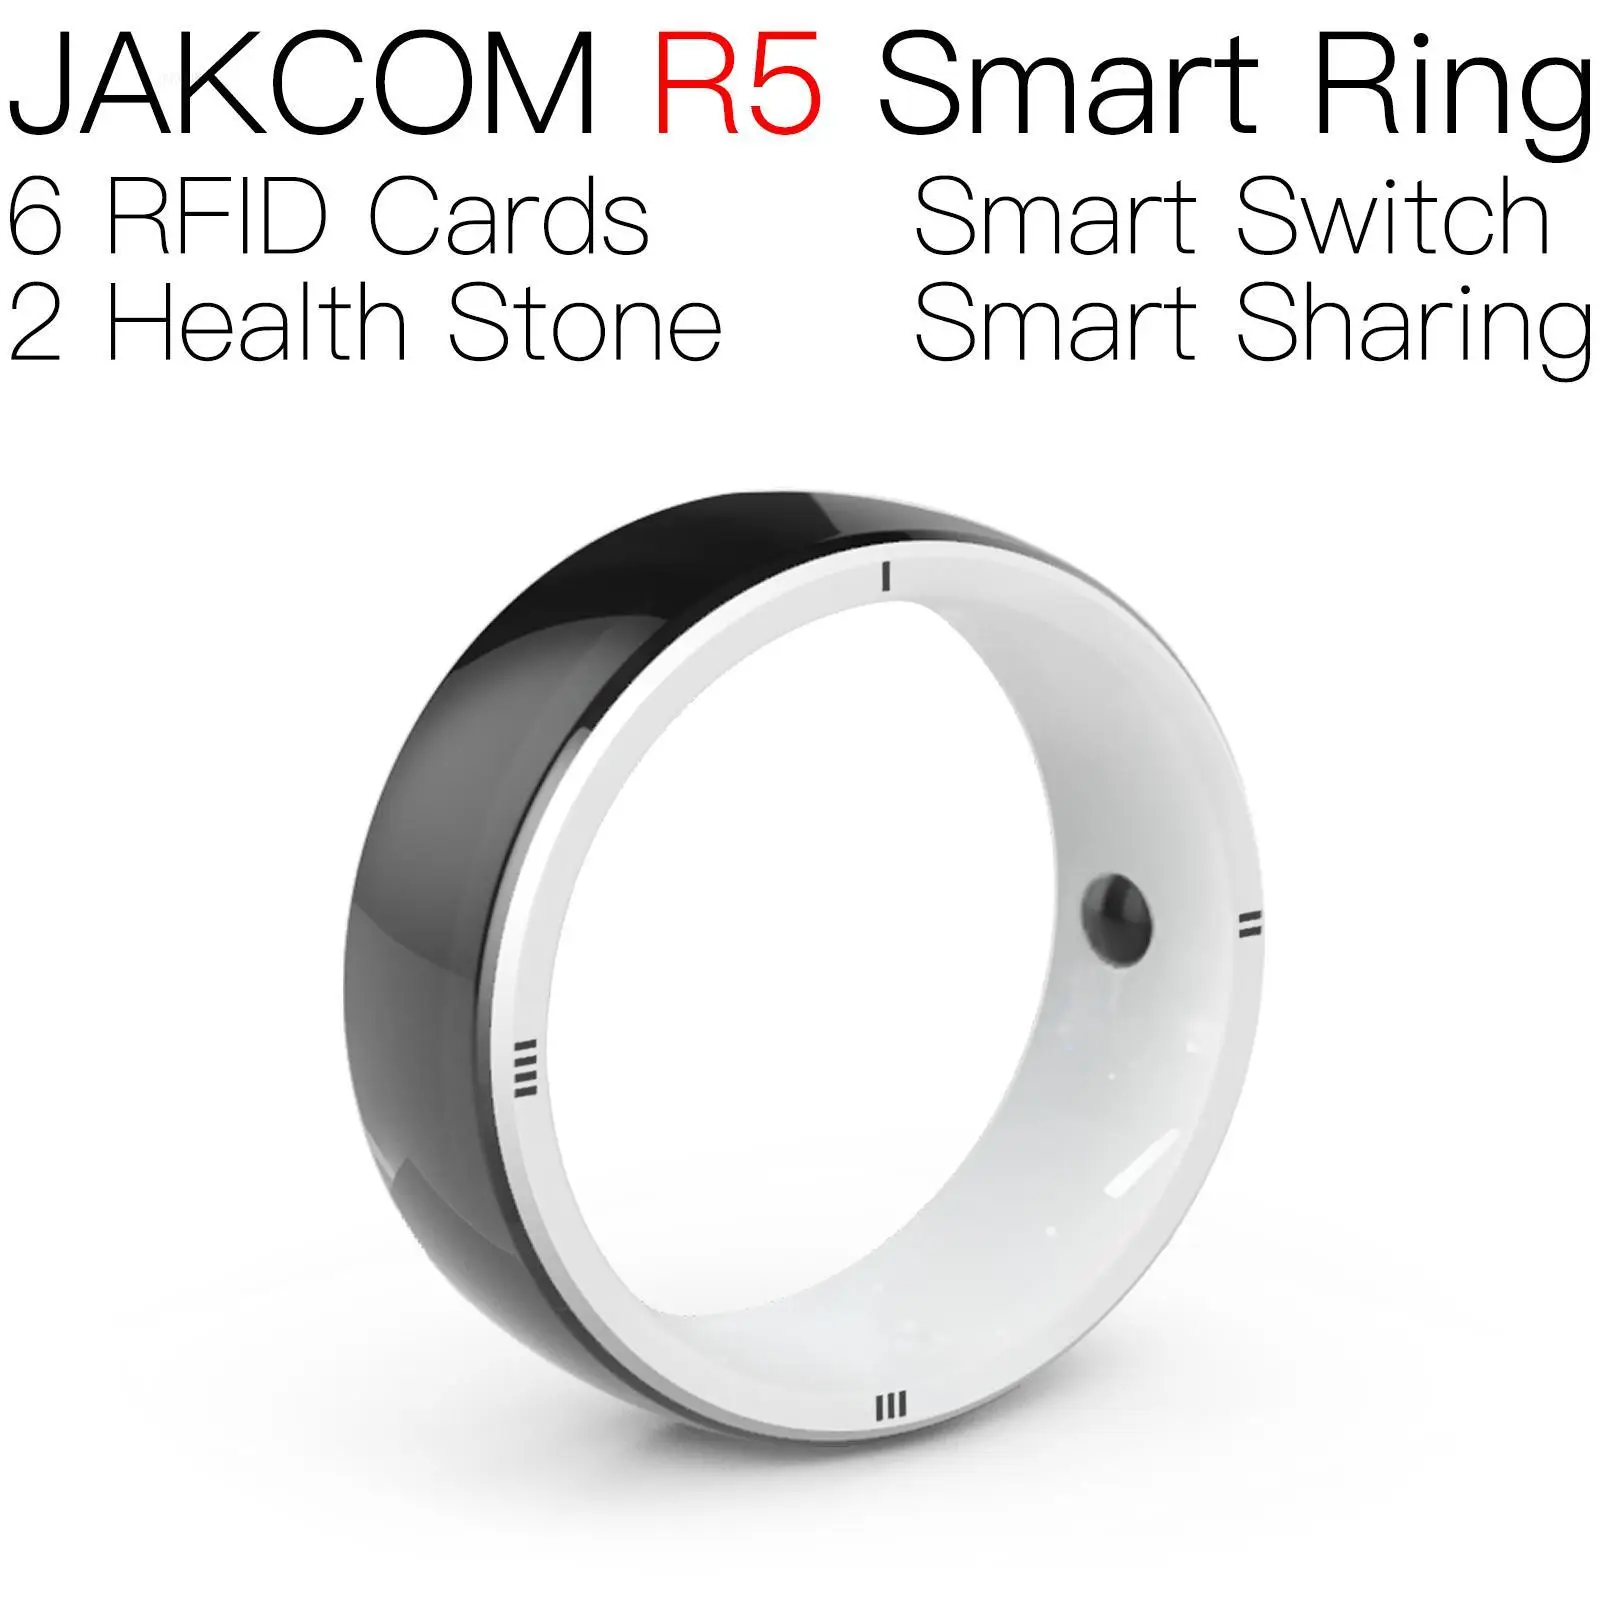 

Смарт-кольцо JAKCOM R5 лучше, чем флейта с именной картой, брелок hf active rfid mobile uhf, антенна дальнего радиуса действия, автомобильная наклейка ic hc gold